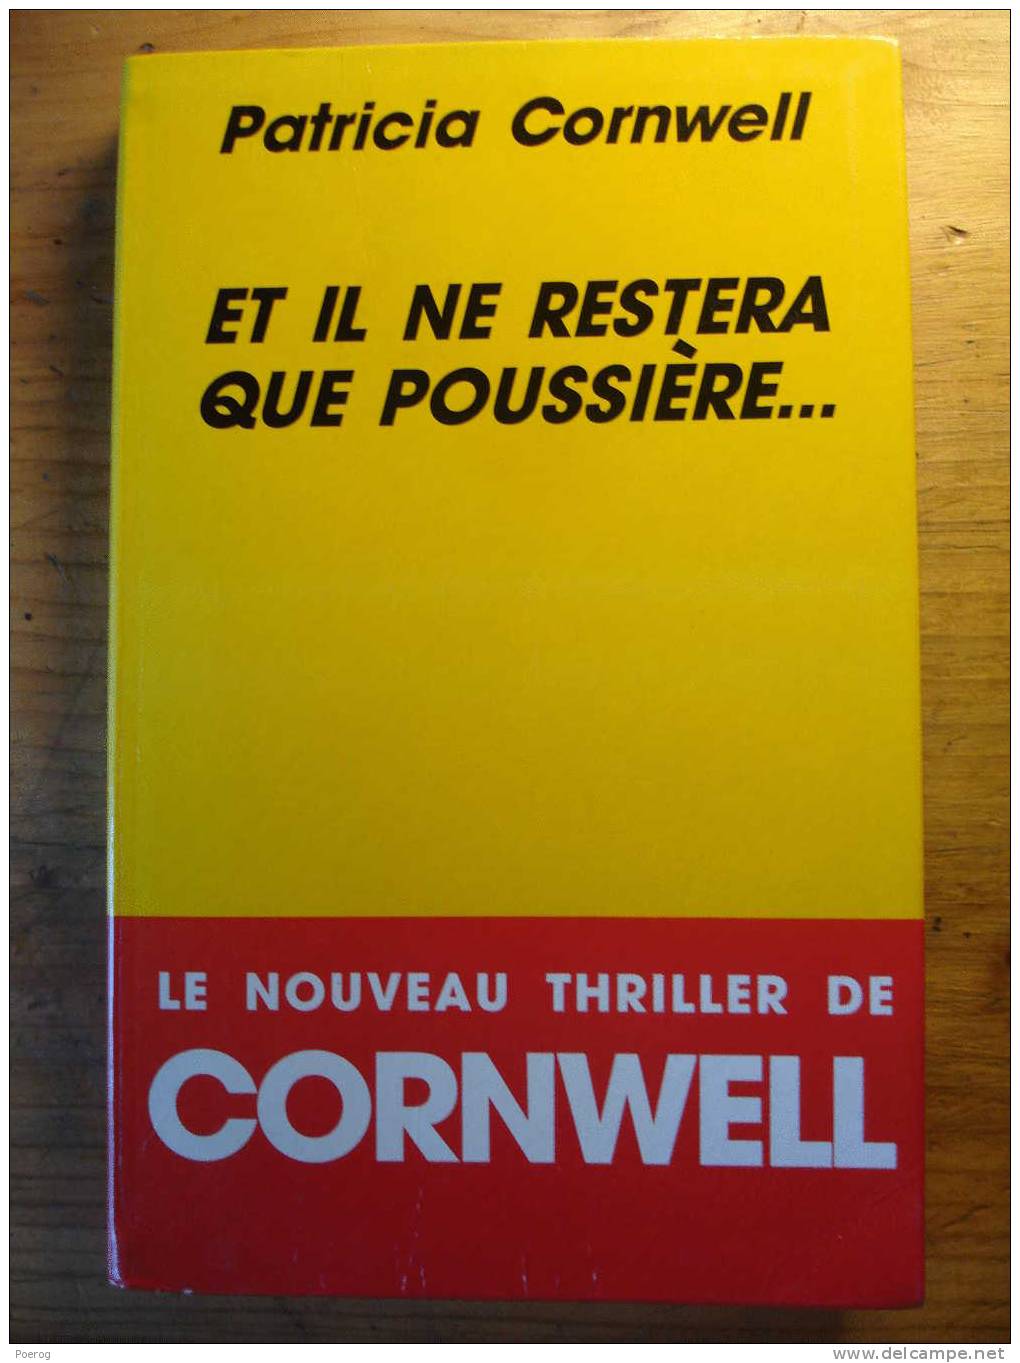 ET IL NE RESTERA QUE POUSSIERE ... - PATRICIA CORNWELL - 1993 - THRILLER - Roman Noir